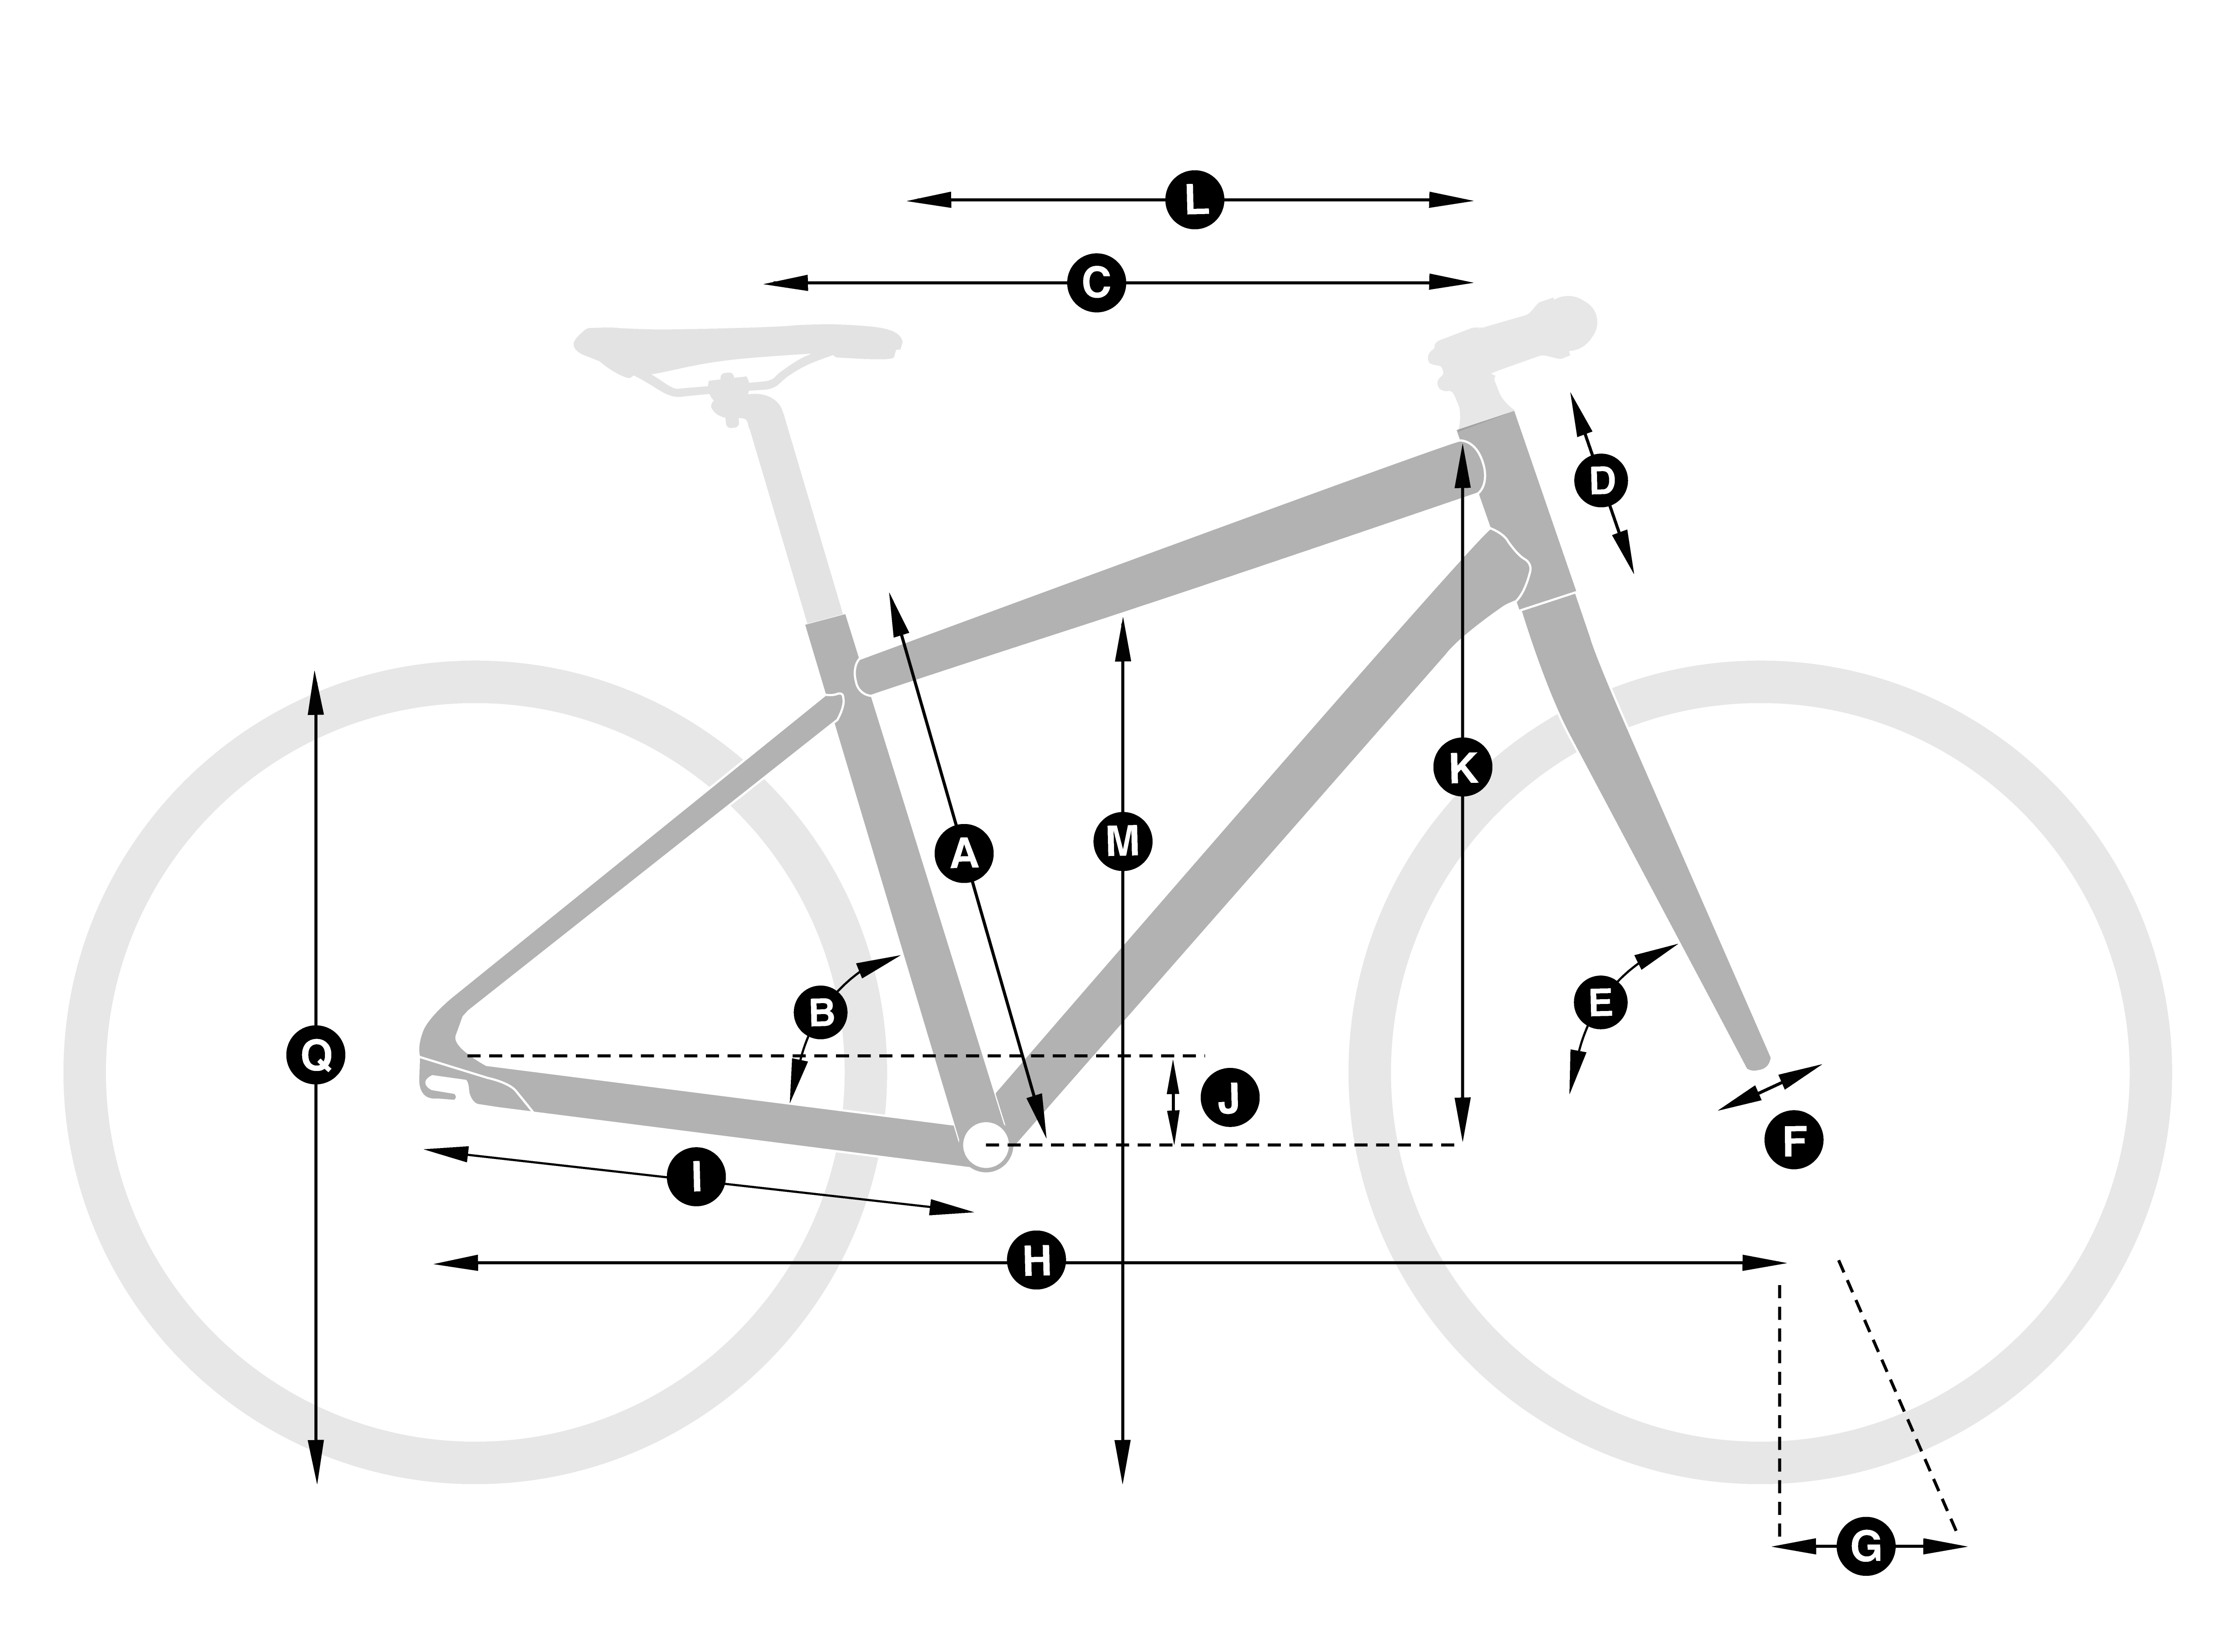 bike diagram